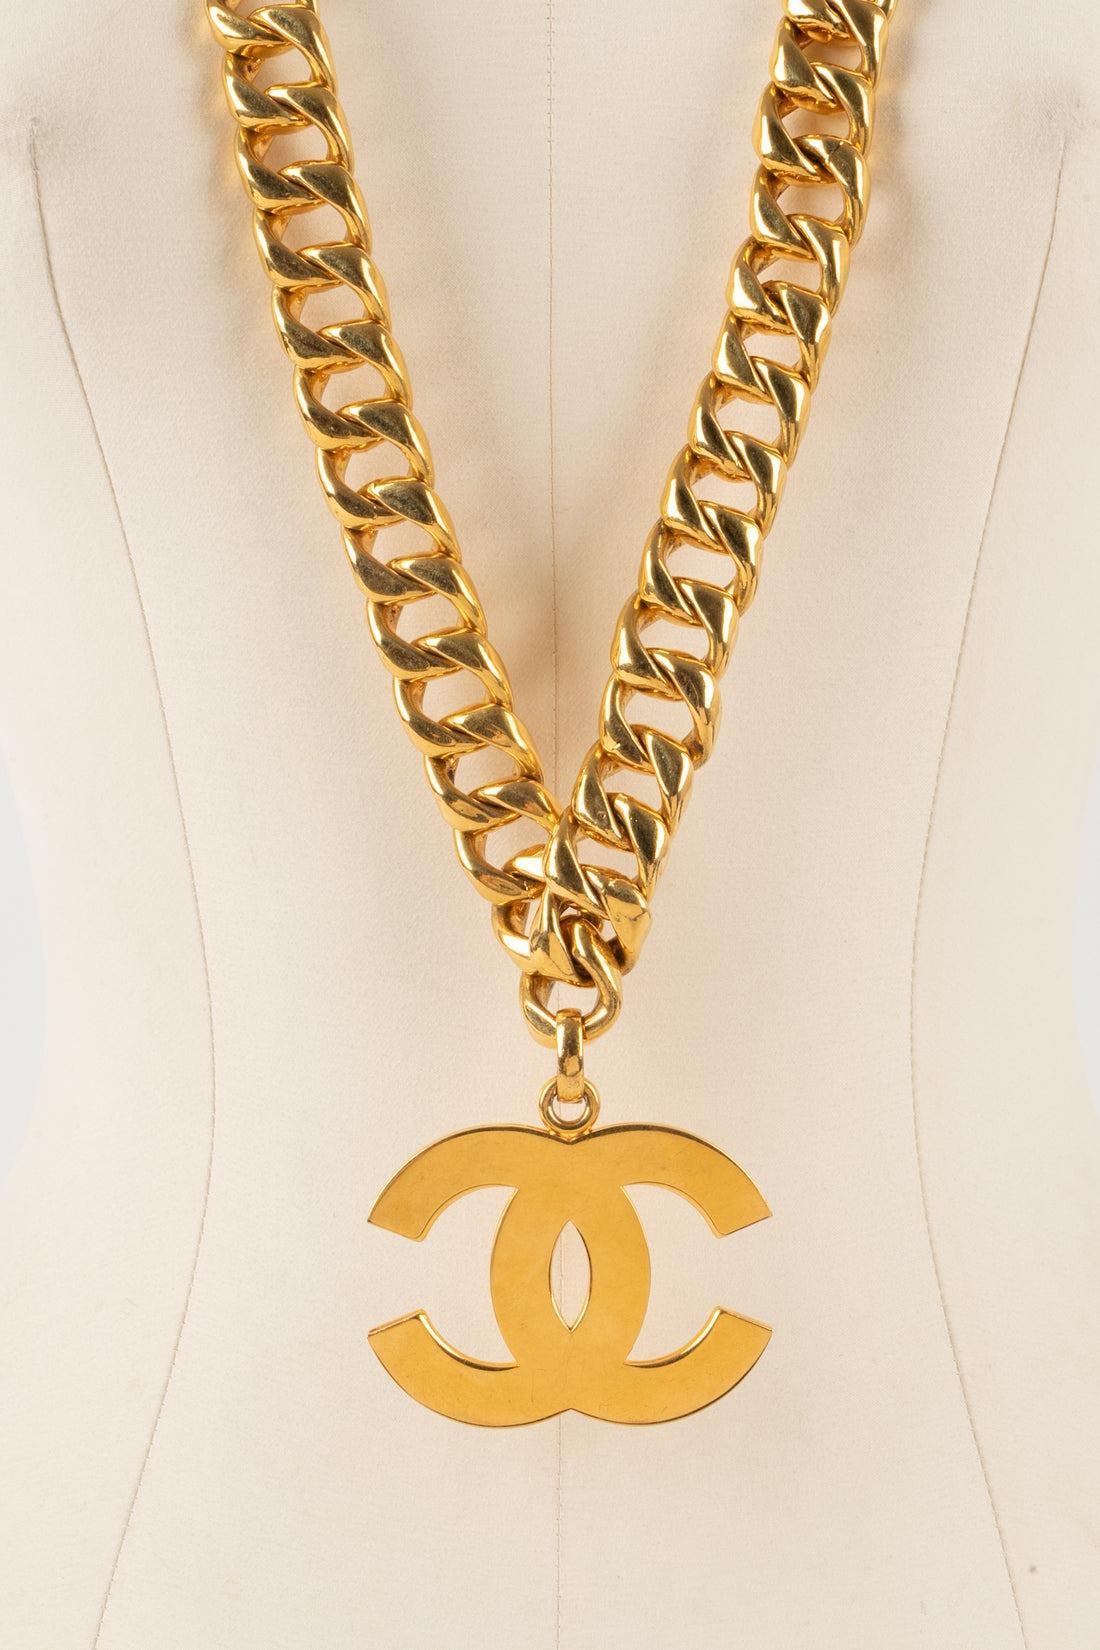 Chanel - (Made in France) Goldenes Metallcollier mit einem cc-Anhänger. Collection'S Frühjahr-Sommer 1993 unter der künstlerischen Leitung von Karl Lagerfeld.

Zusätzliche Informationen:
Zustand: Sehr guter Zustand
Abmessungen: Länge: 94